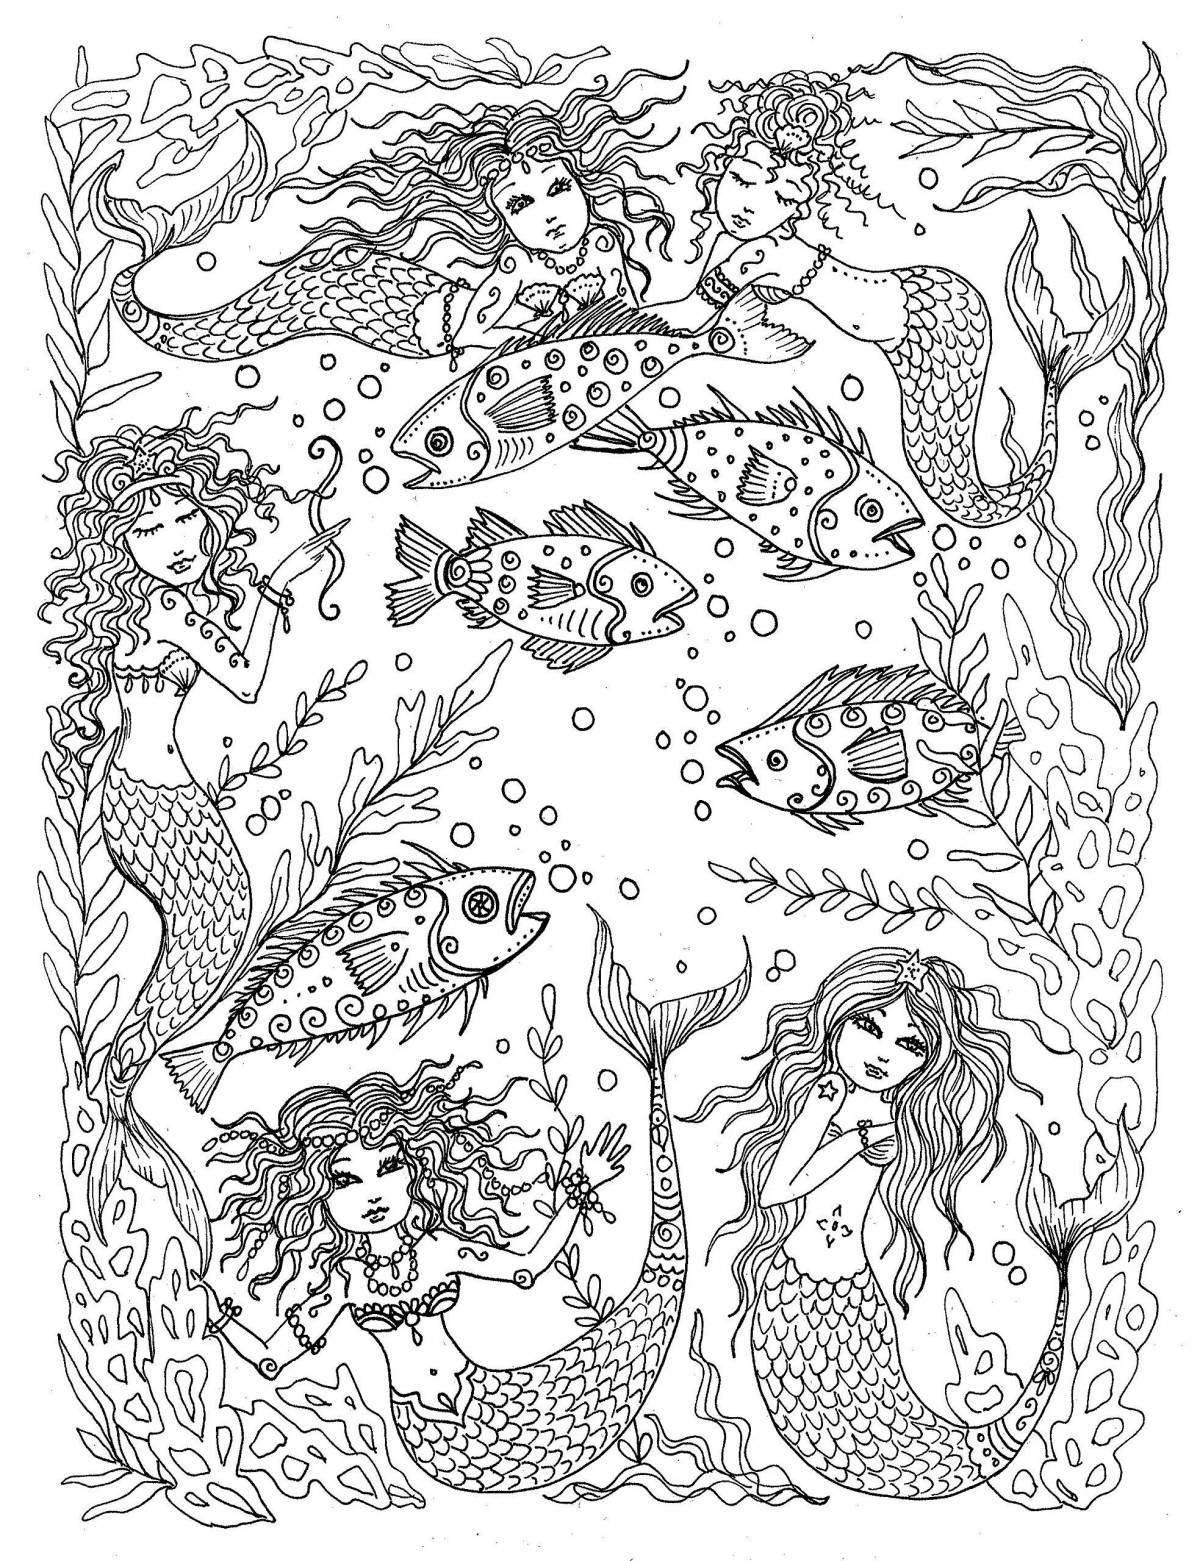 Fascinating anti-stress mermaid coloring book